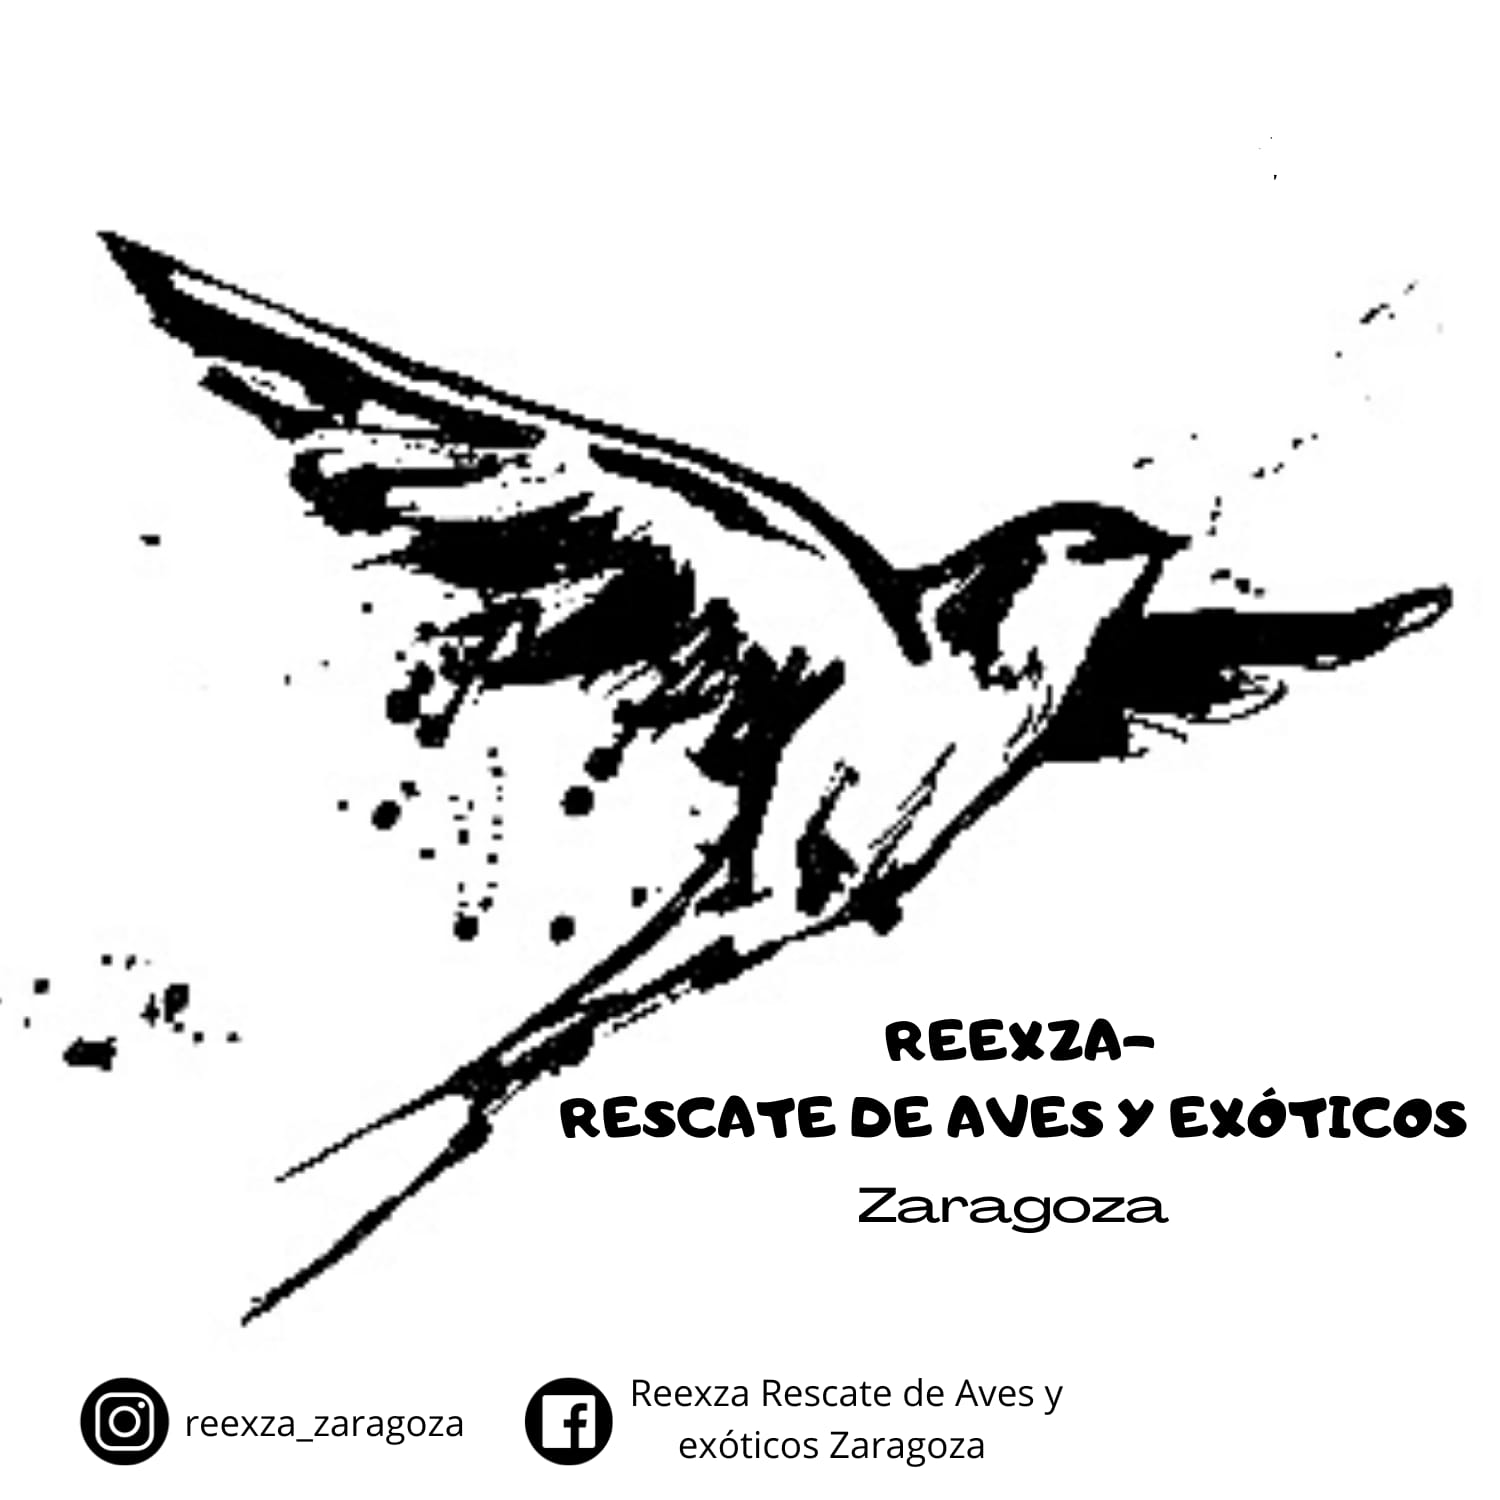 REEXZA Rescate de Aves y Exóticos Zaragoza